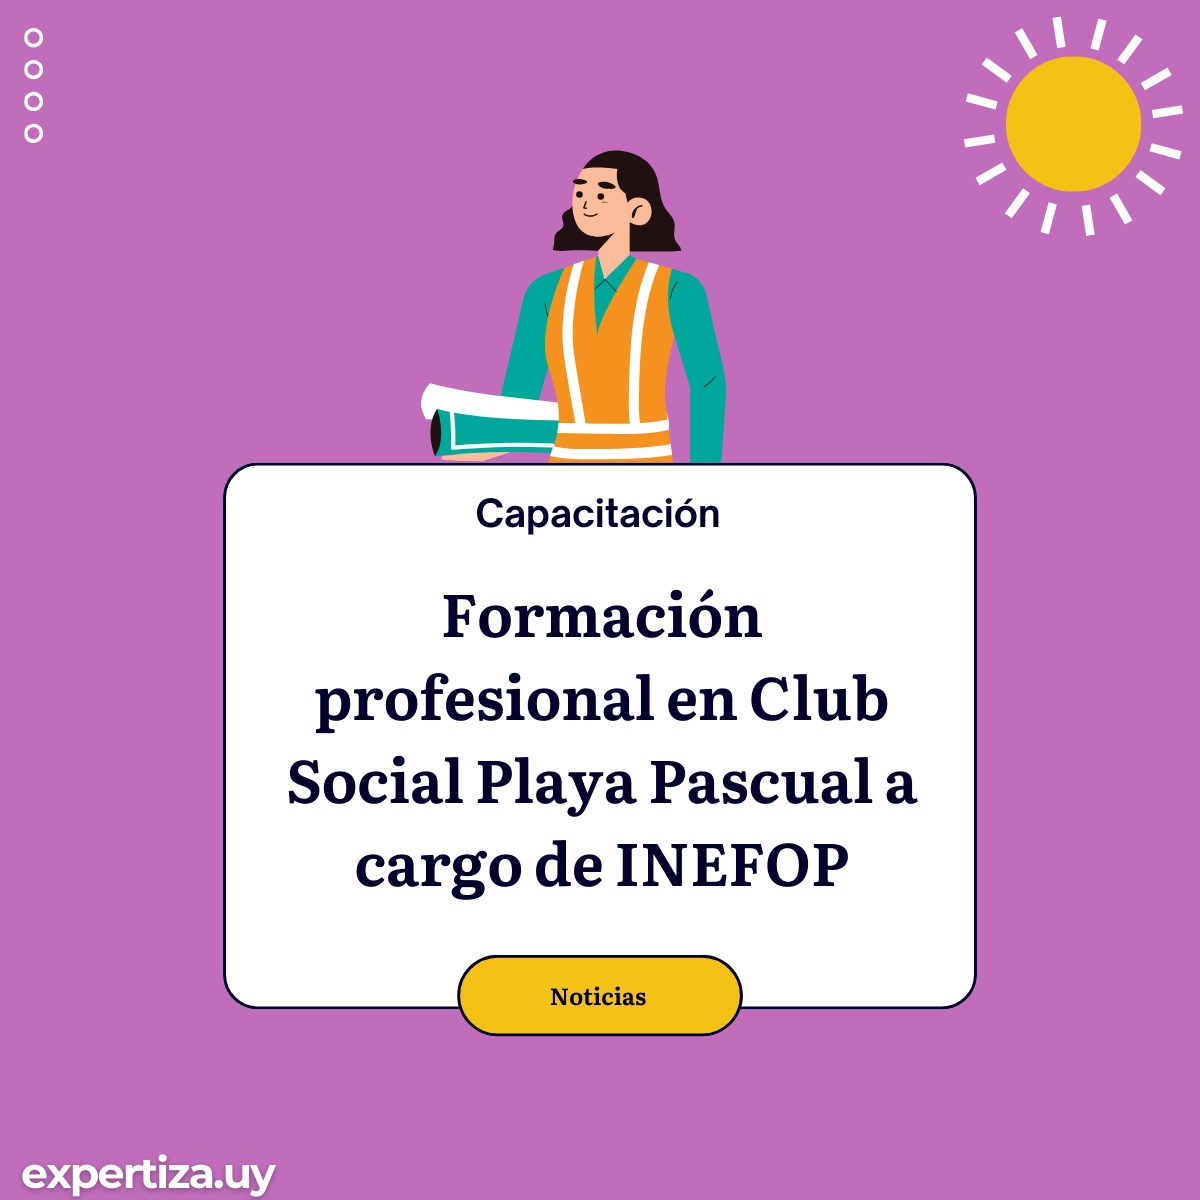 Formación profesional en Club Social Playa Pascual a cargo de INEFOP